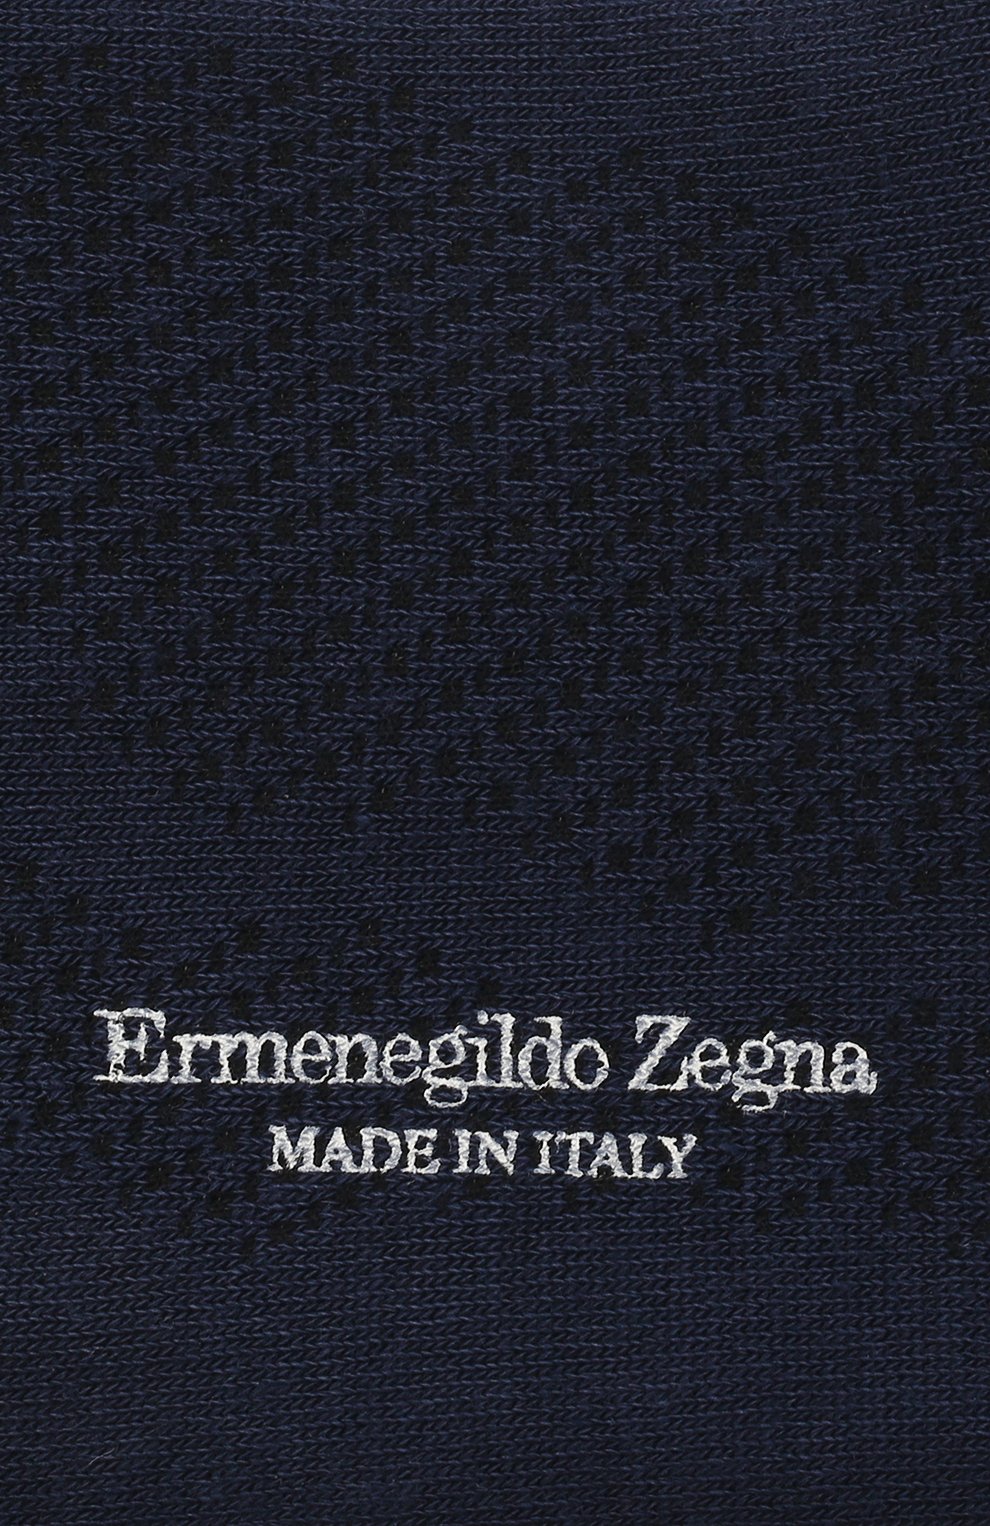 Мужские носки ERMENEGILDO ZEGNA темно-синего цвета, арт. N5V025010 | Фото 2 (Кросс-КТ: бельё; Материал внешний: Синтетический материал)